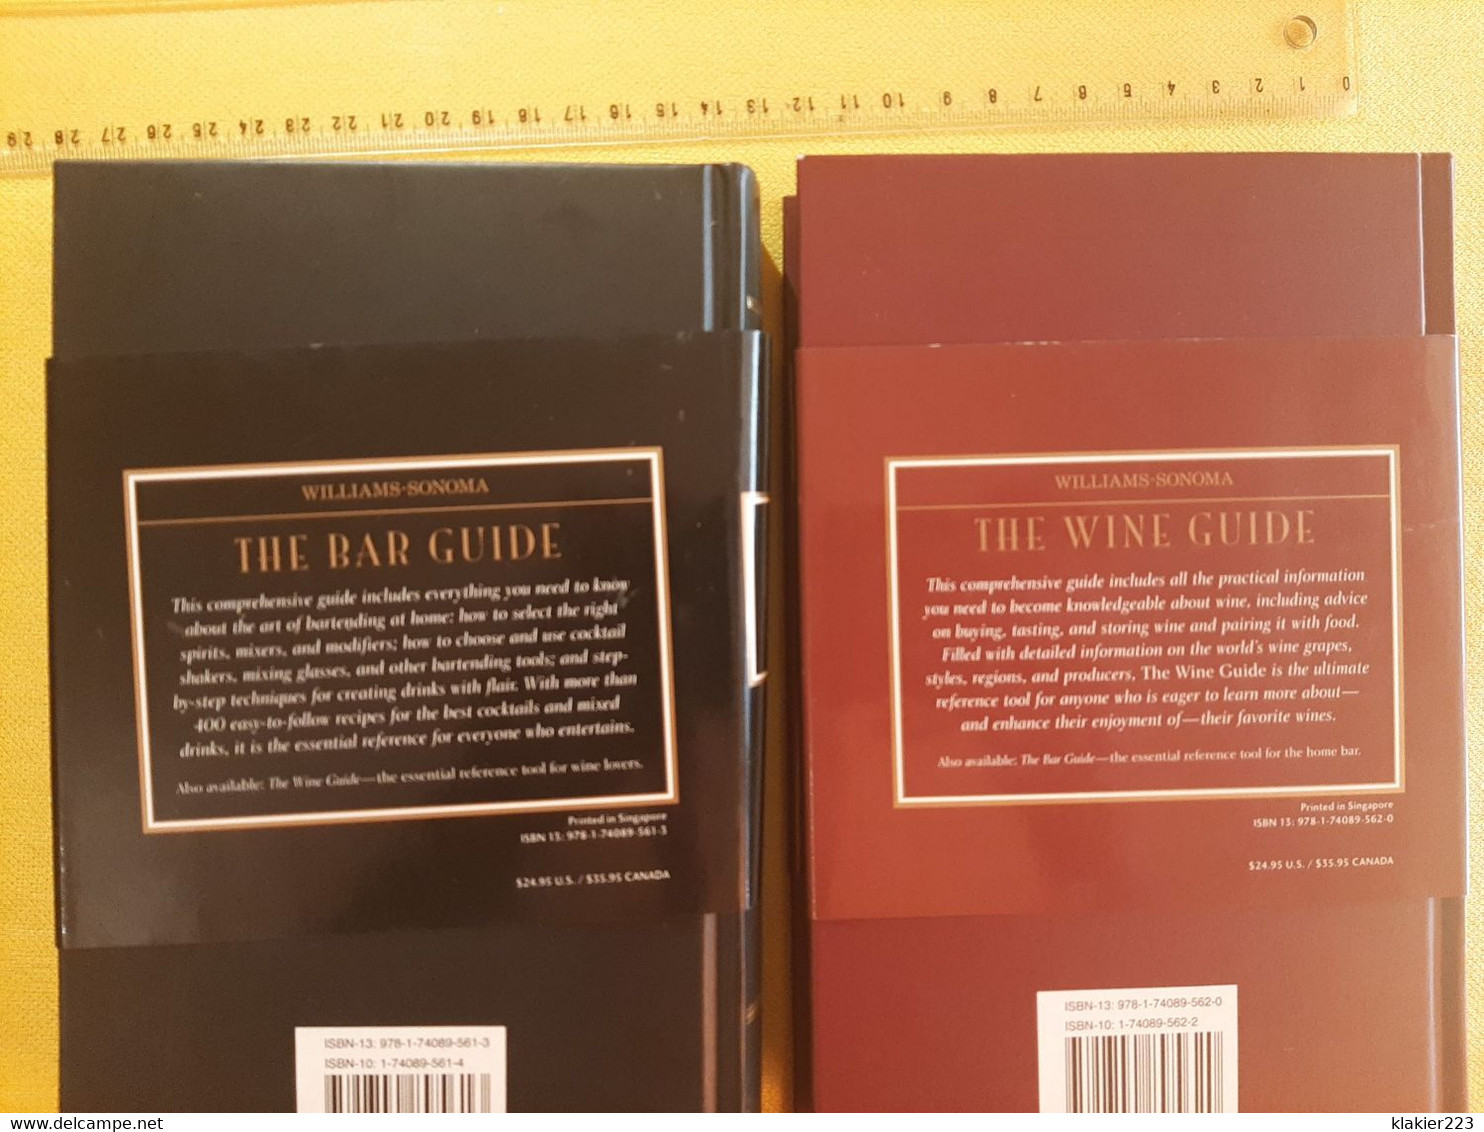 Williams-Sonoma - The Bar Guide / The Wine Guide - Europea